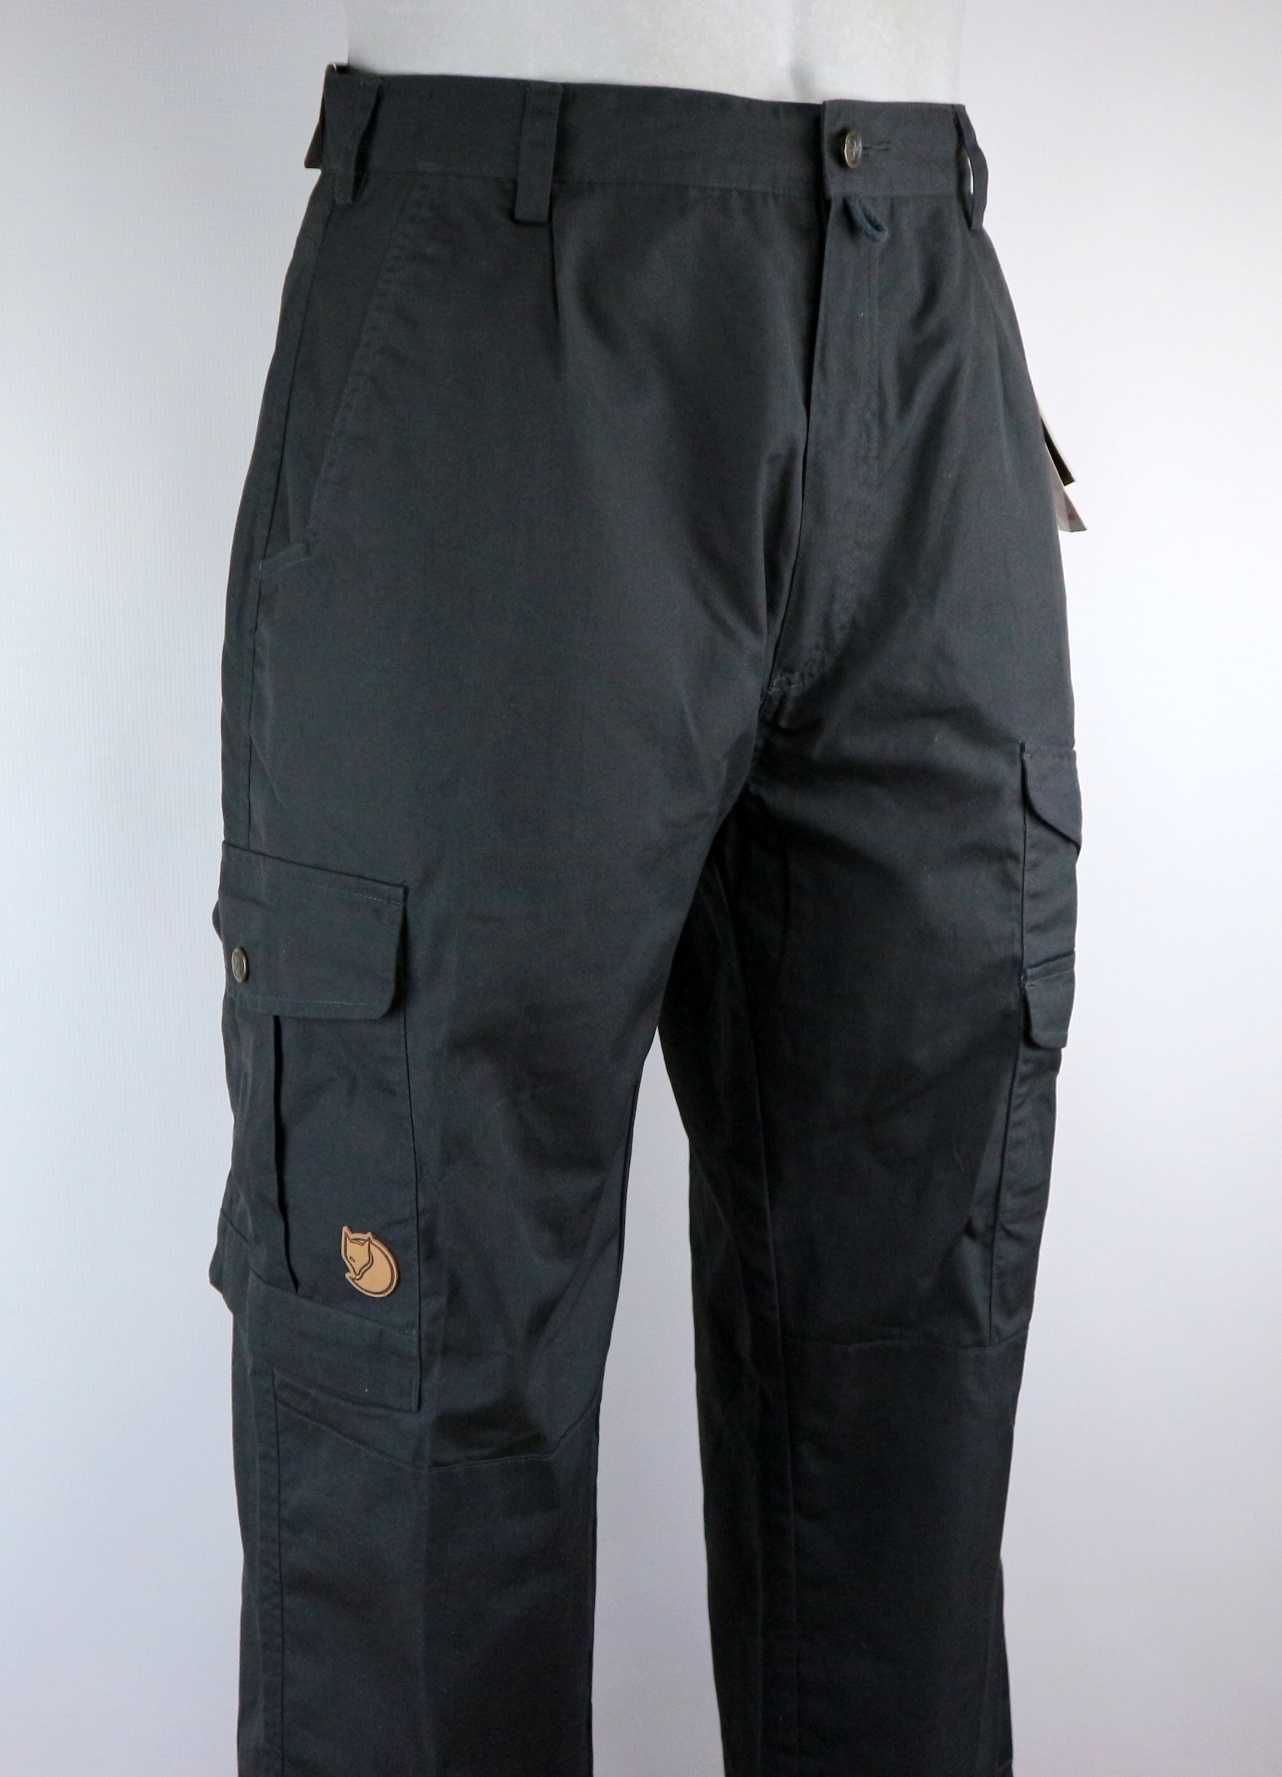 Fjallraven Iceland damskie spodnie outdoorowe trekkingowe XL (44)